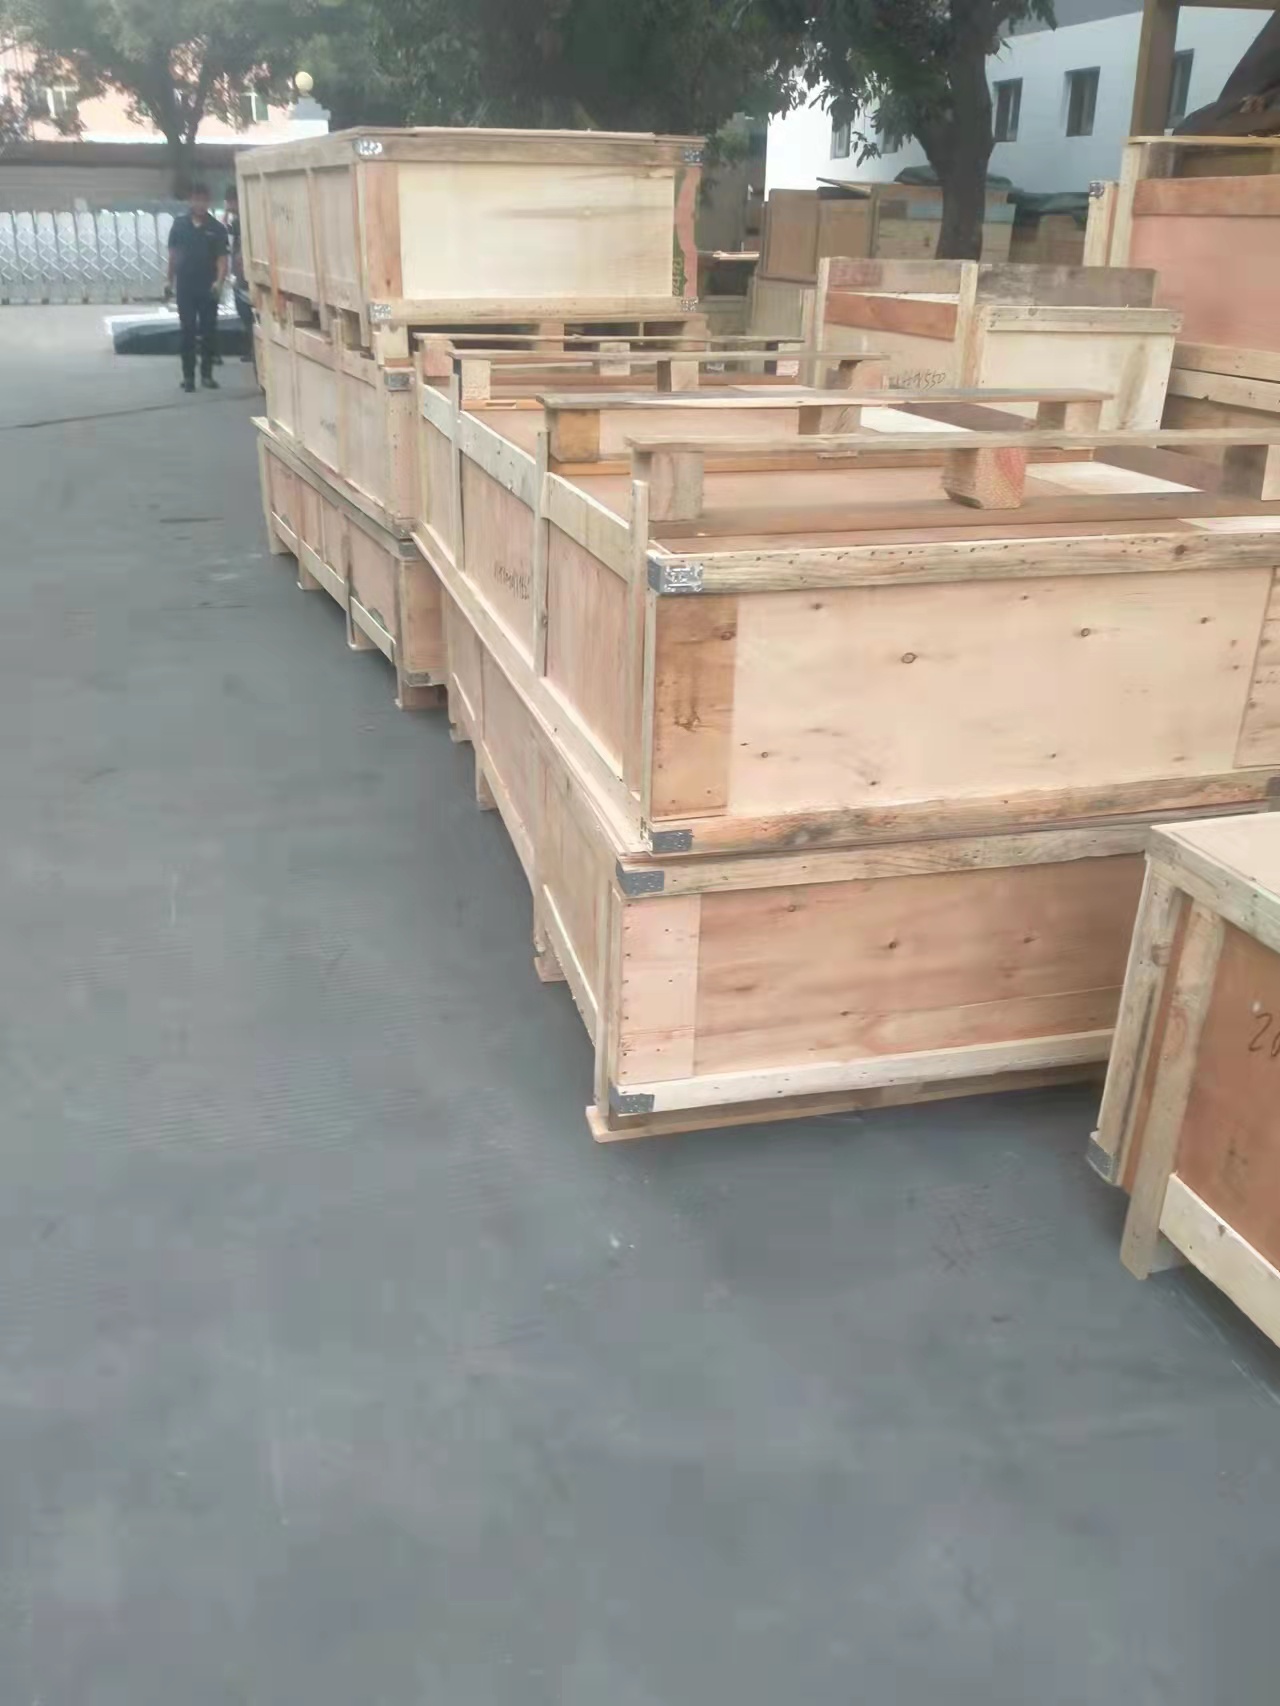 供应木箱 木质包装箱 胶合板木箱 出口木箱生产厂家、生产制造、多少钱、厂家哪个好、厂商供应图片